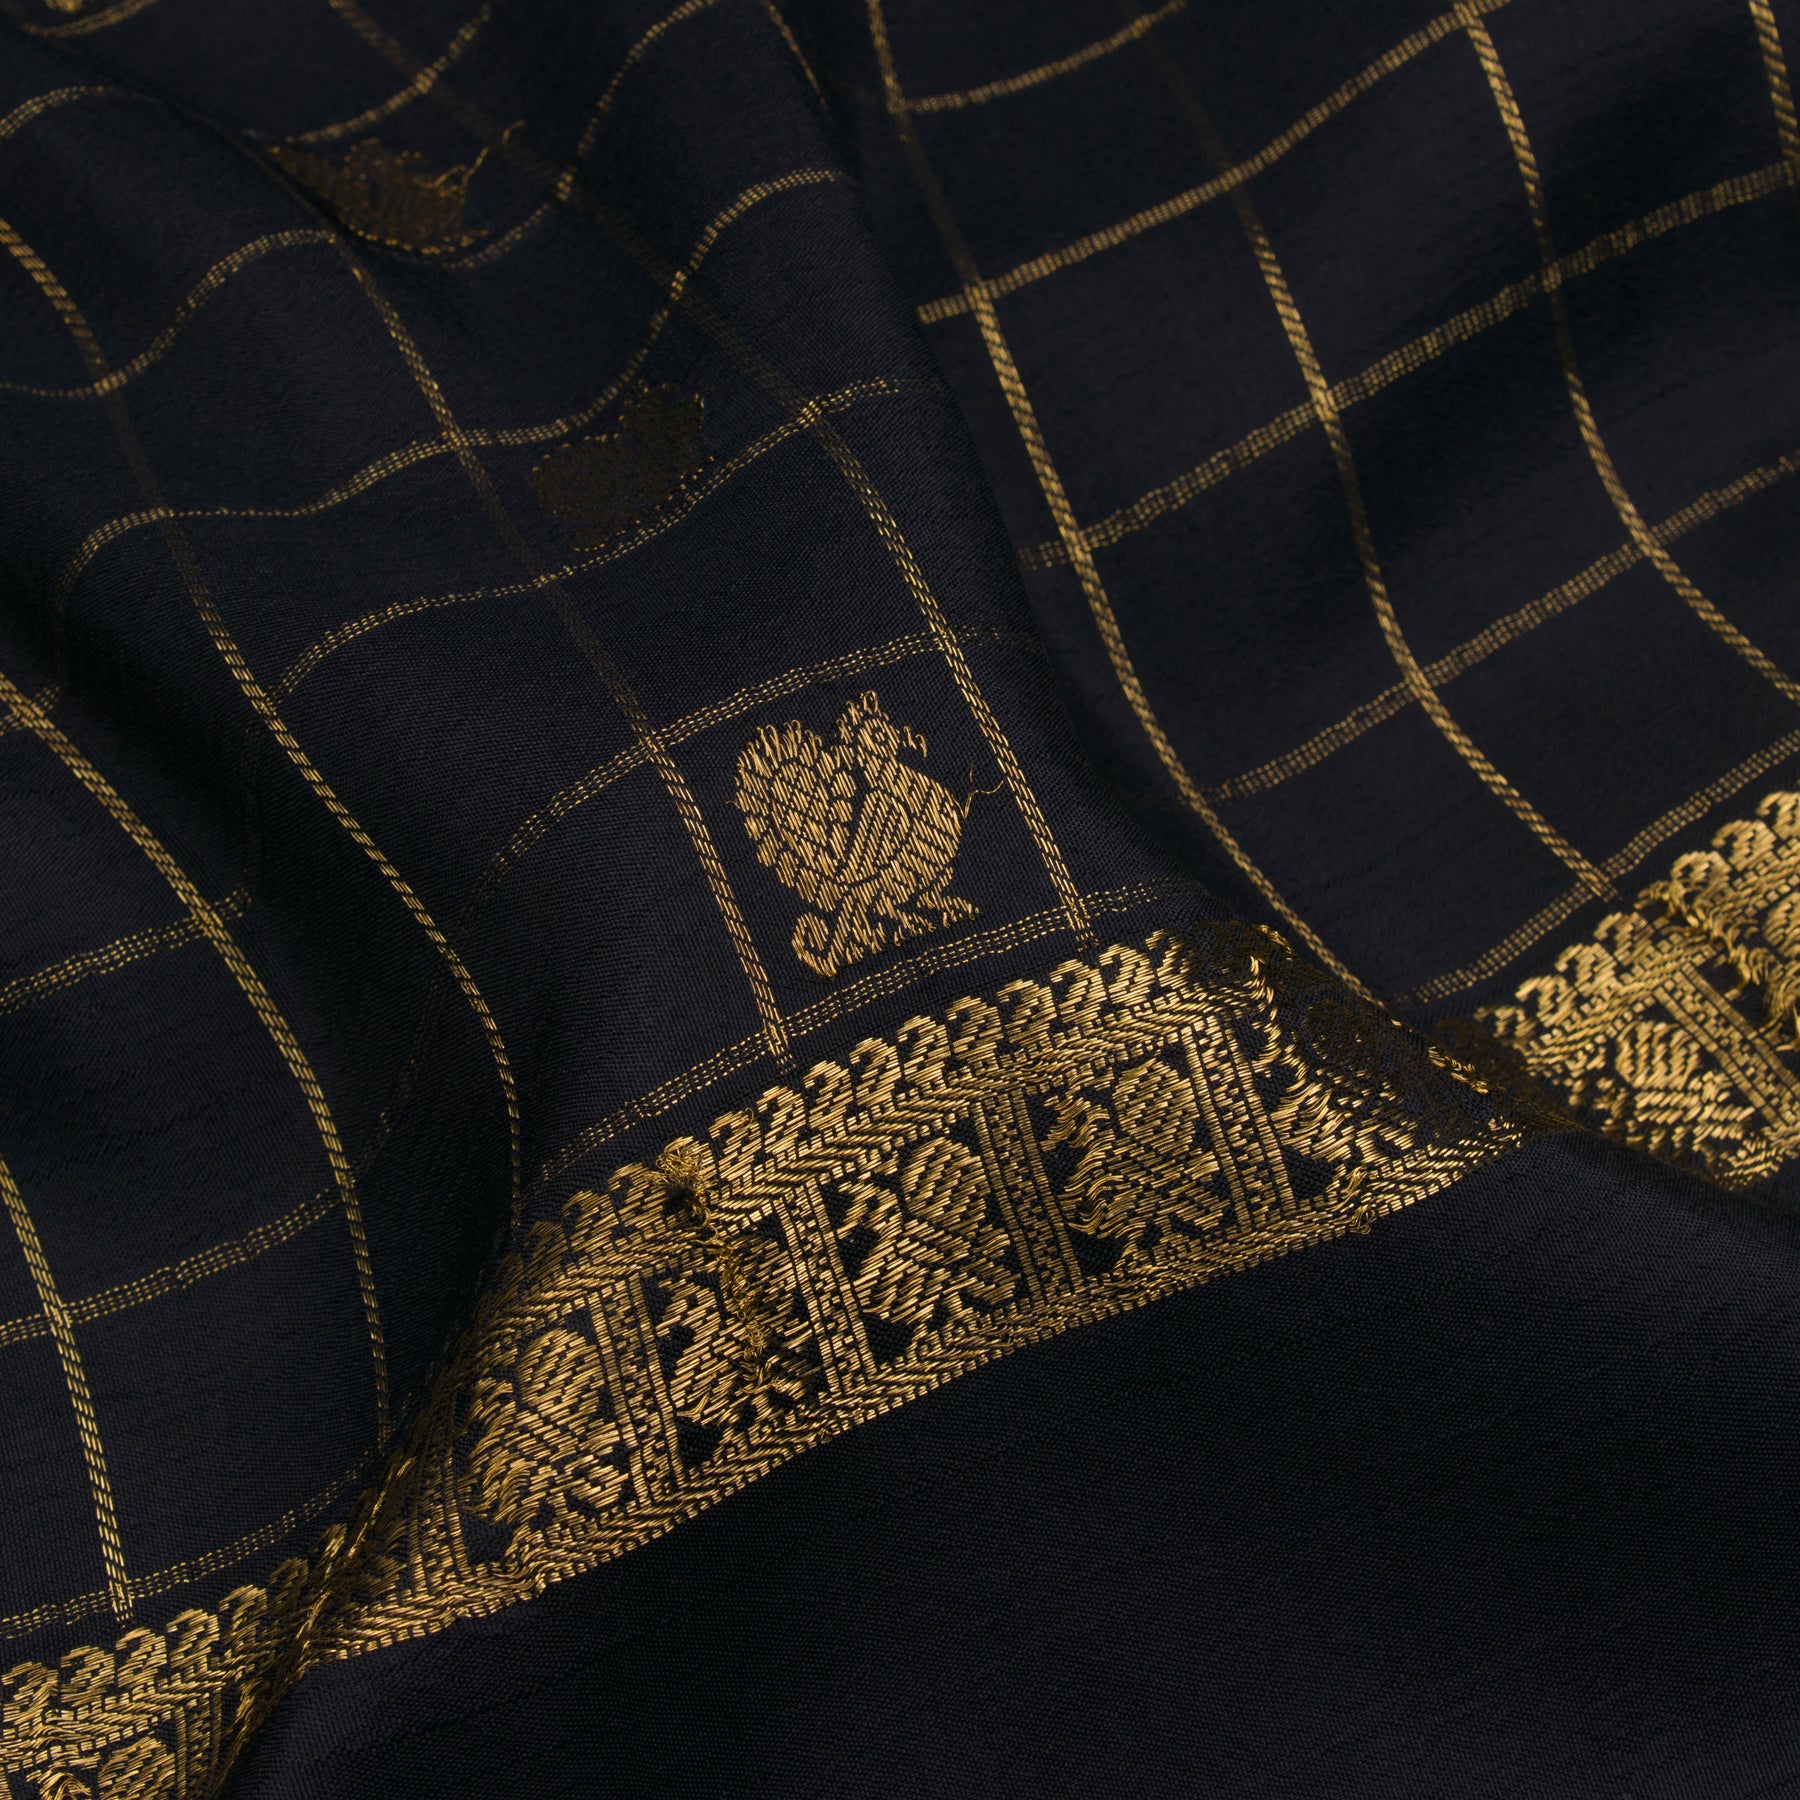 Kanakavalli Kanjivaram Silk Sari 22-595-HS001-00088 - Fabric View